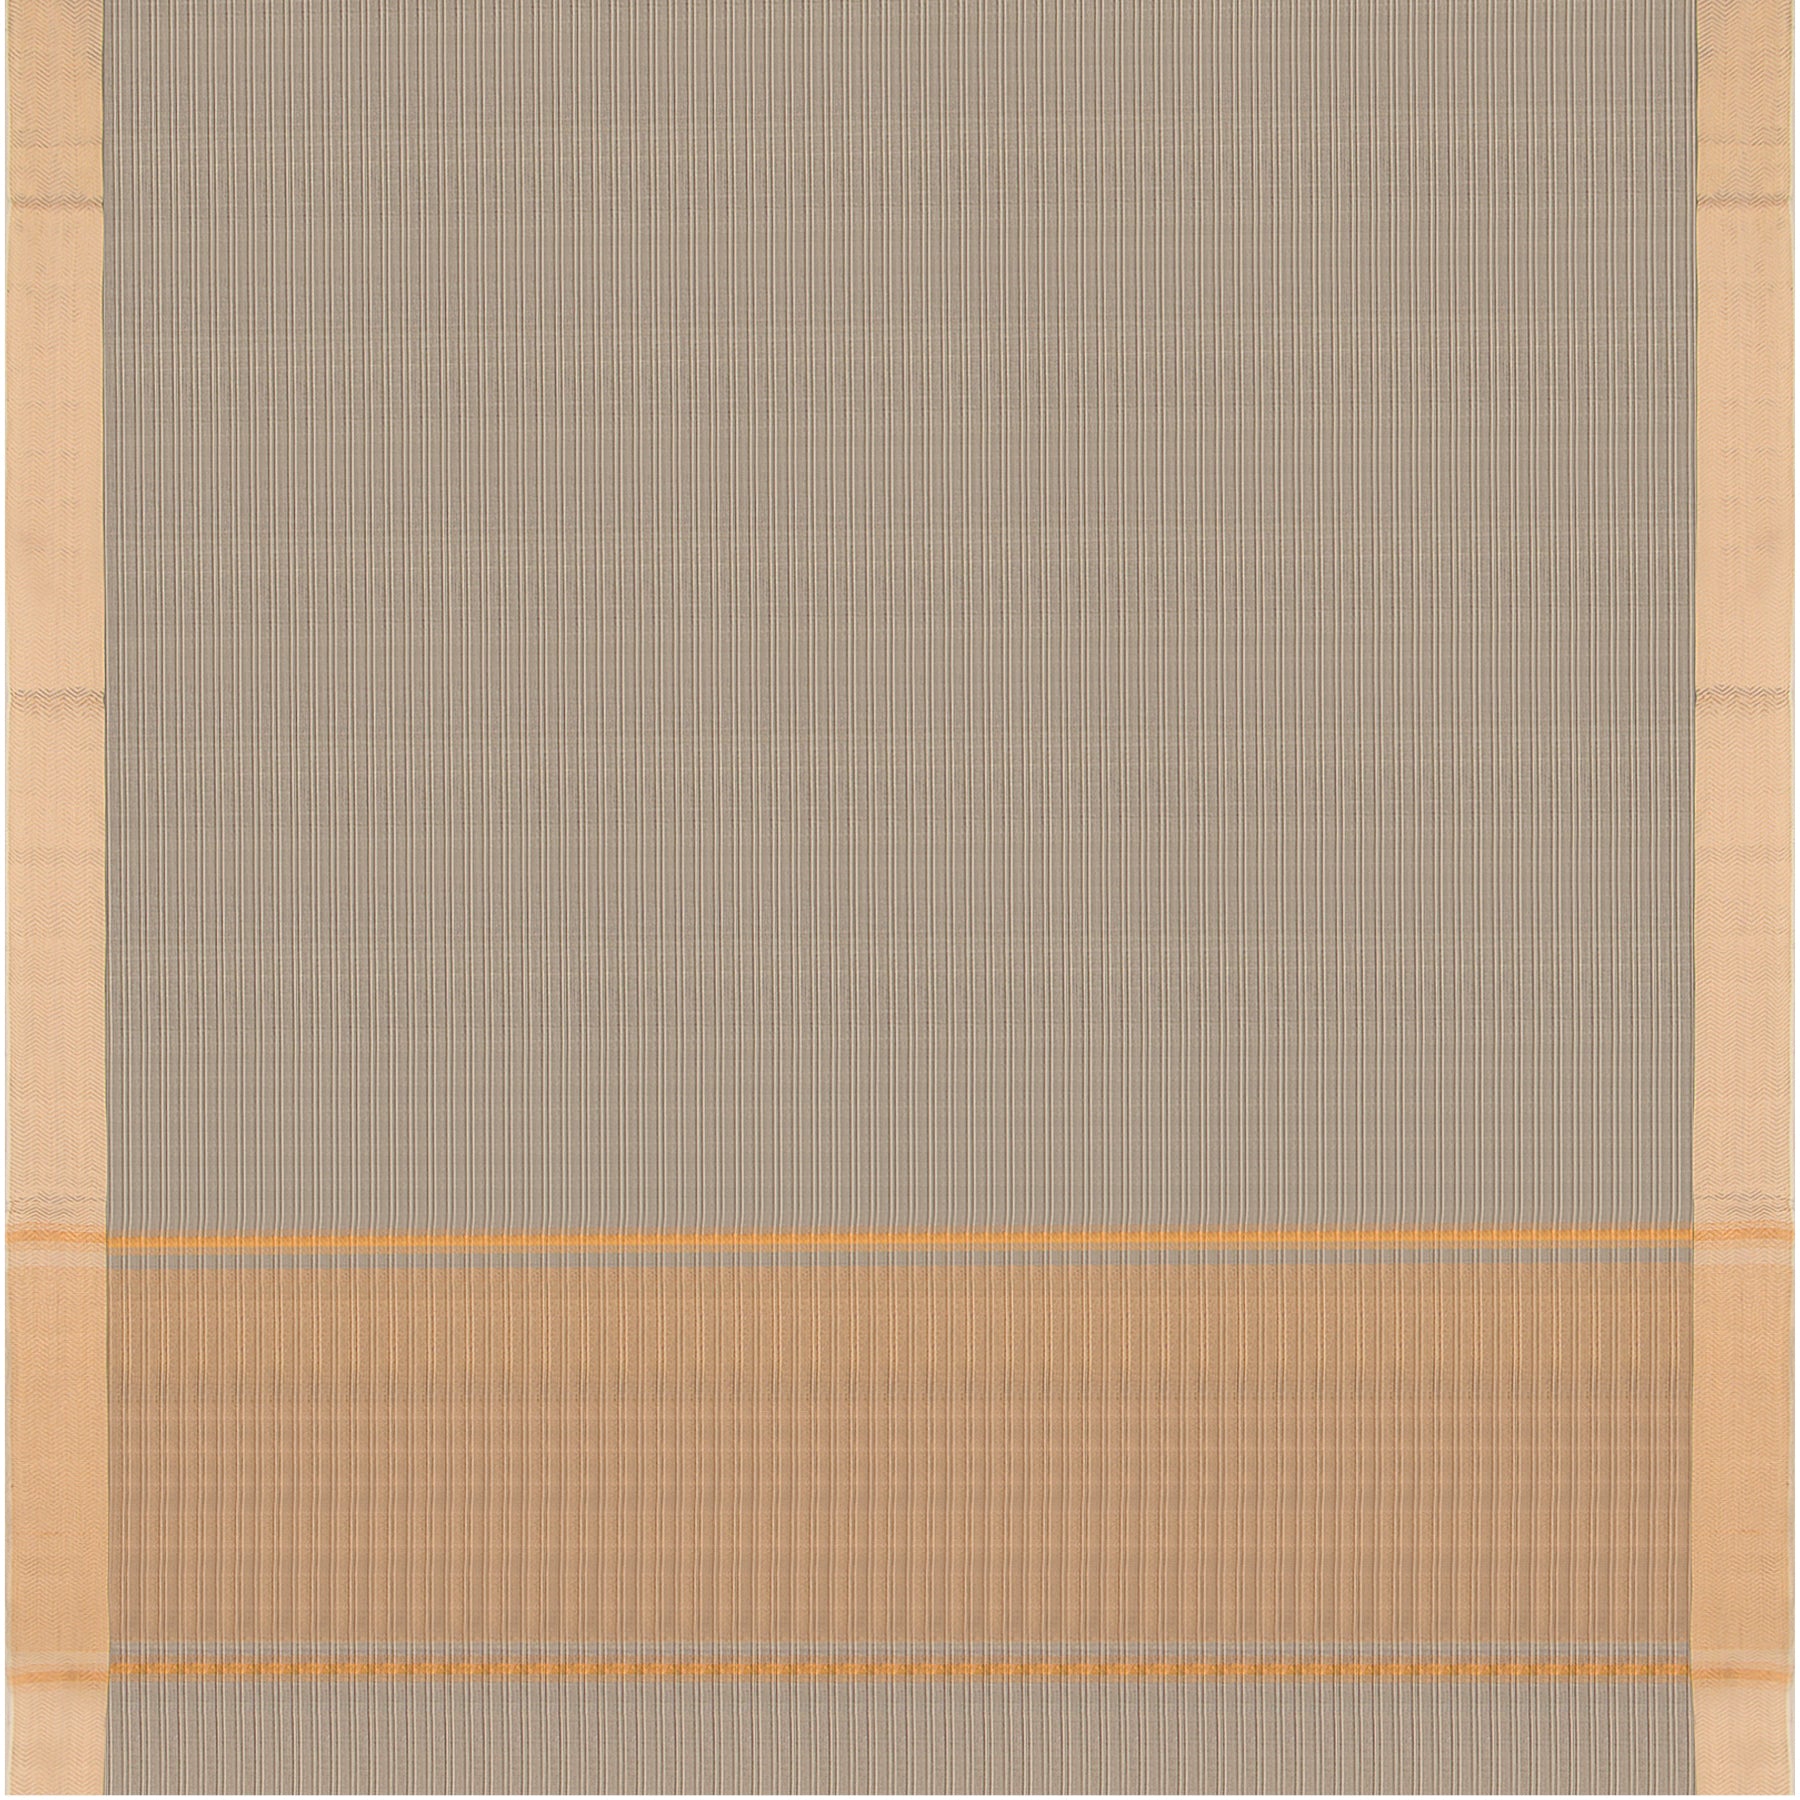 Kanakavalli Mangalgiri Cotton Sari 23-261-HS003-14832 - Full View